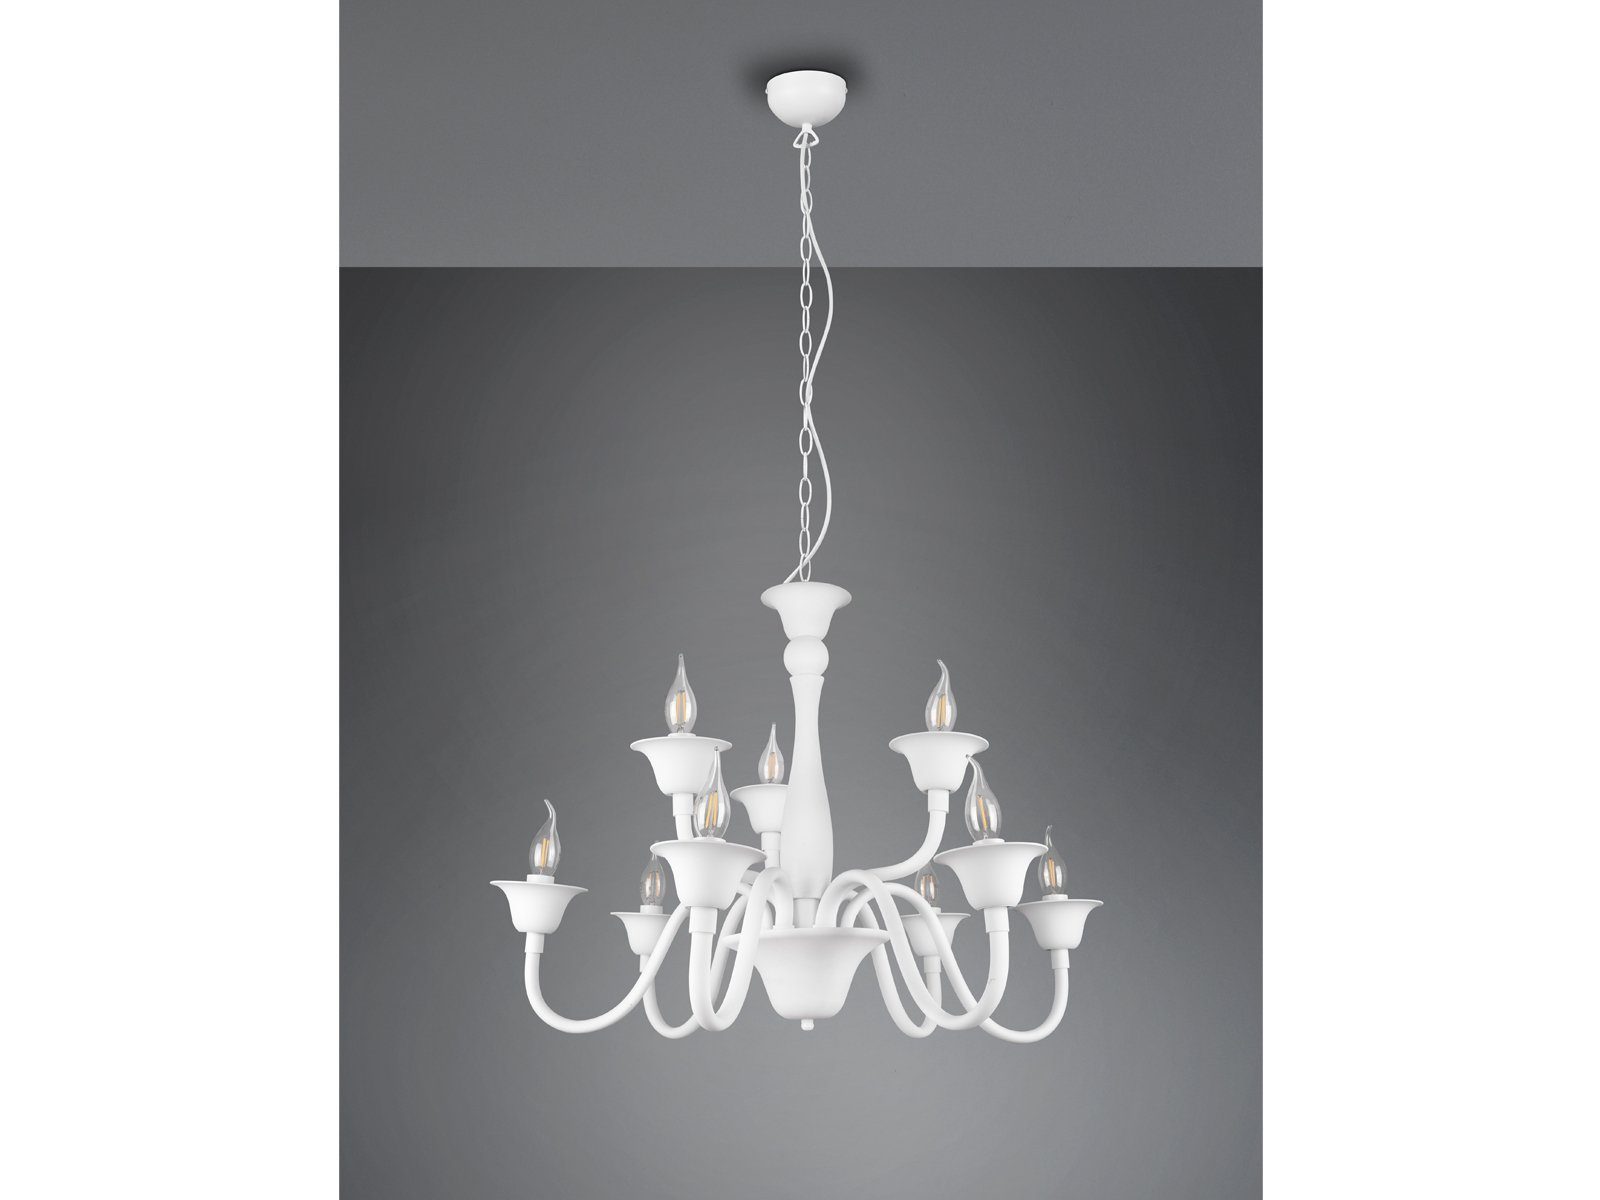 Metall Große-r wechselbar, 9-flammige Vintage Lampe 72cm Weiß, Ø warmweiß, meineWunschleuchte Kronleuchter, LED hängend, LED